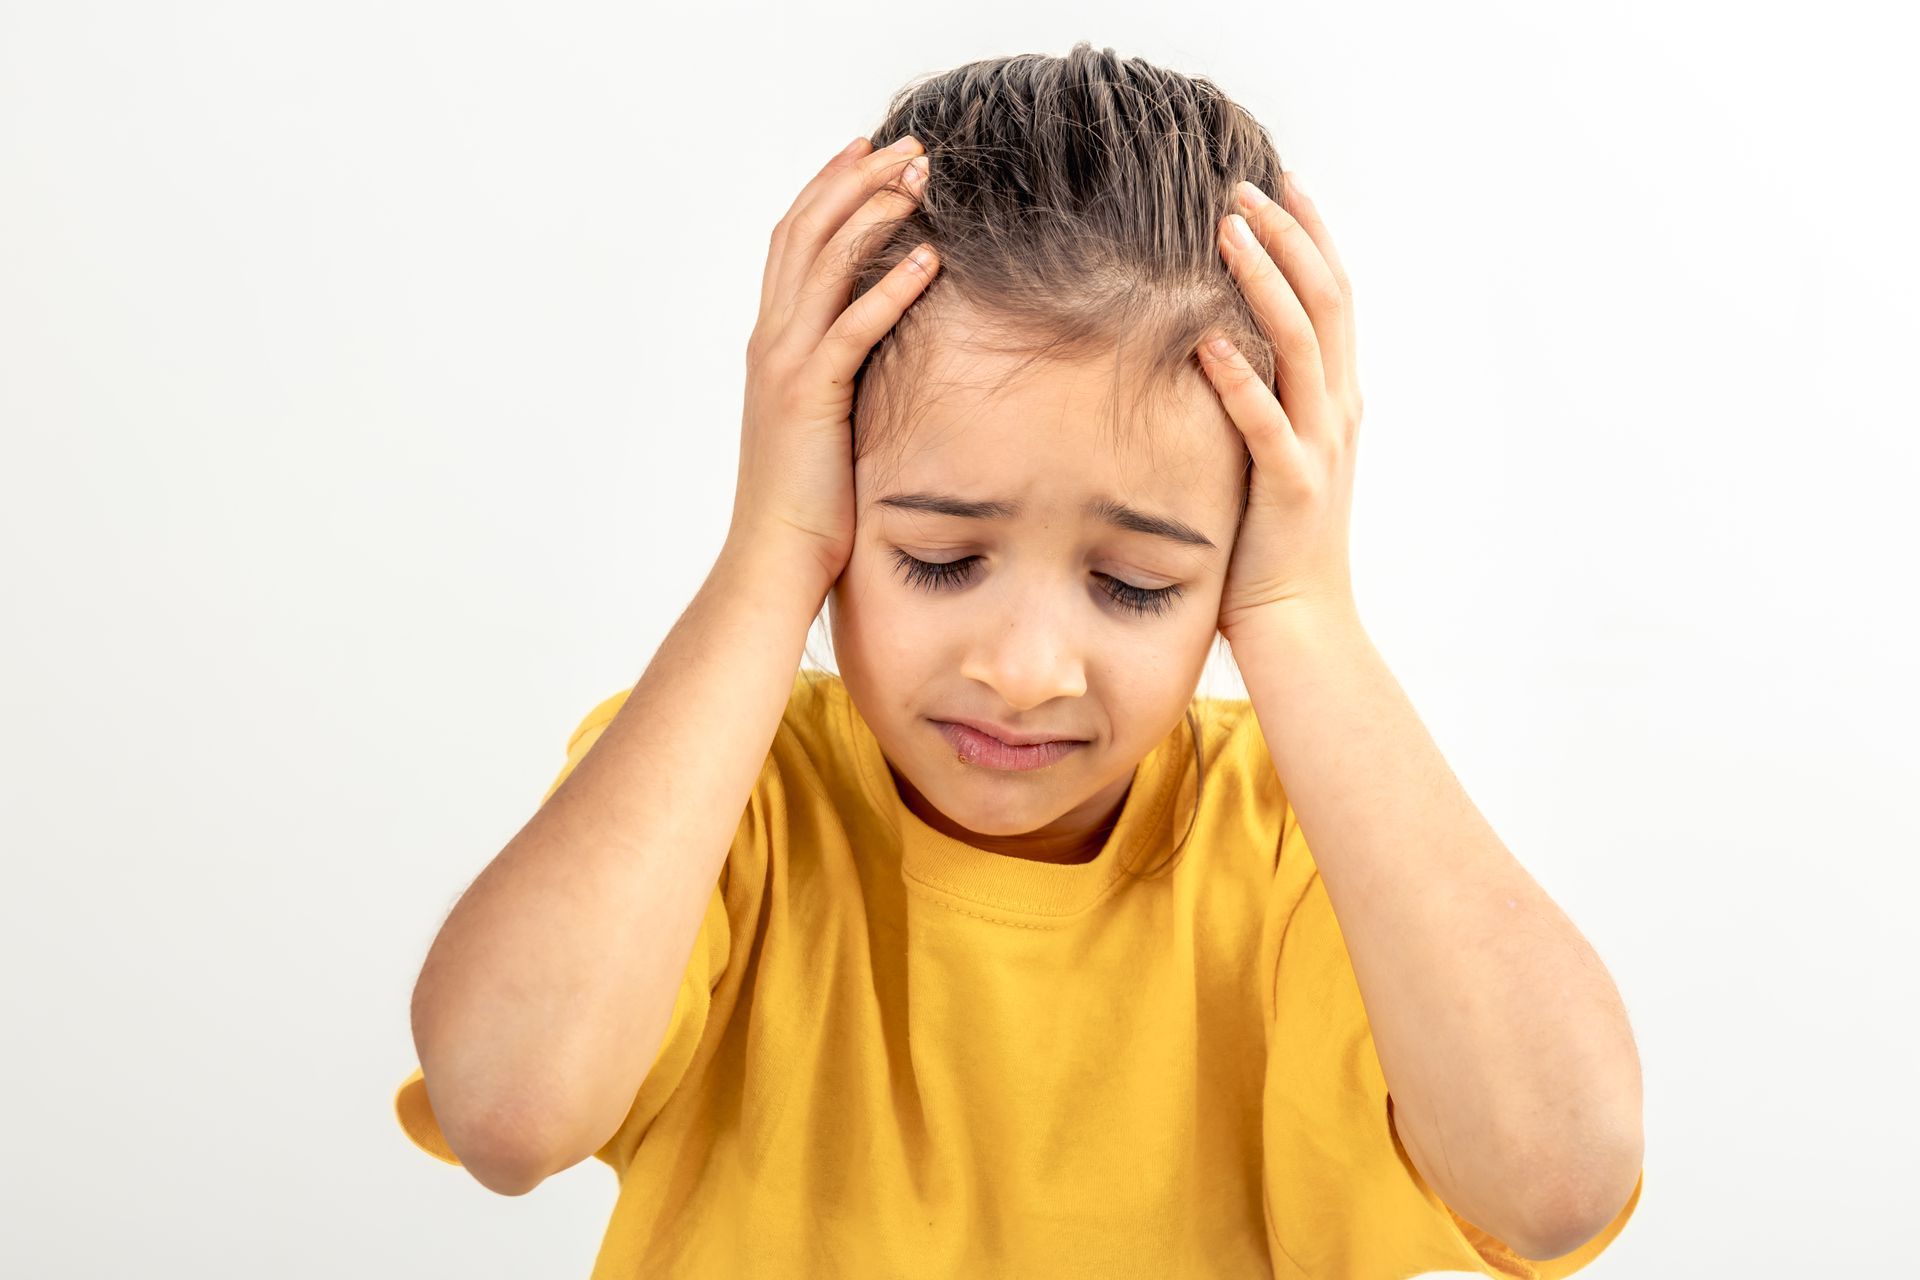 migraines in children